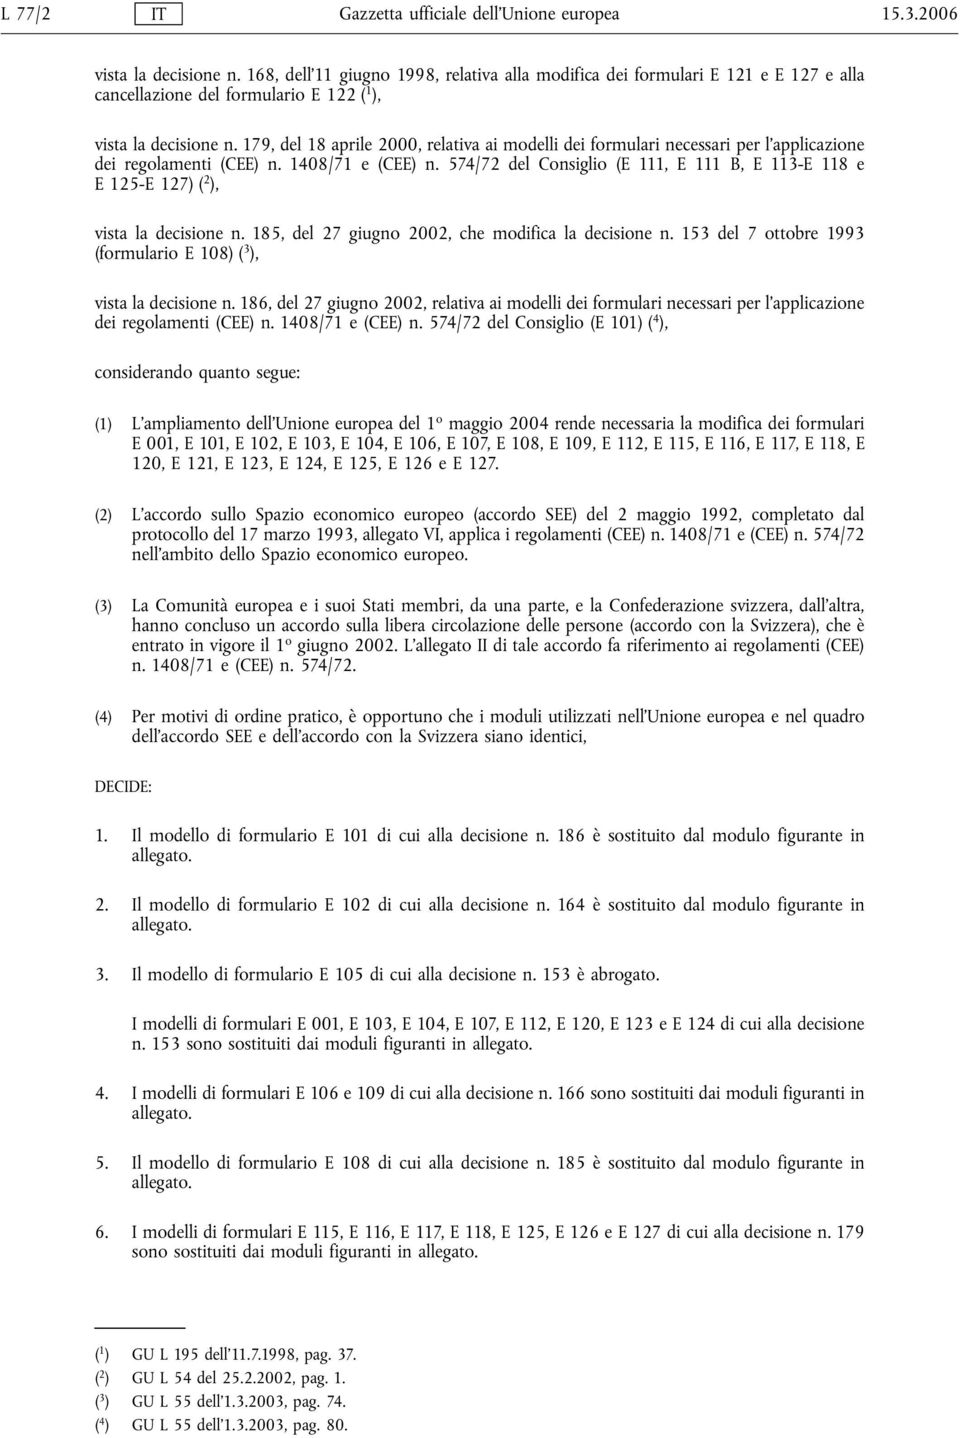 179, del 18 aprile 2000, relativa ai modelli dei formulari necessari per l'applicazione dei regolamenti (CEE) n. 1408/71 e (CEE) n.